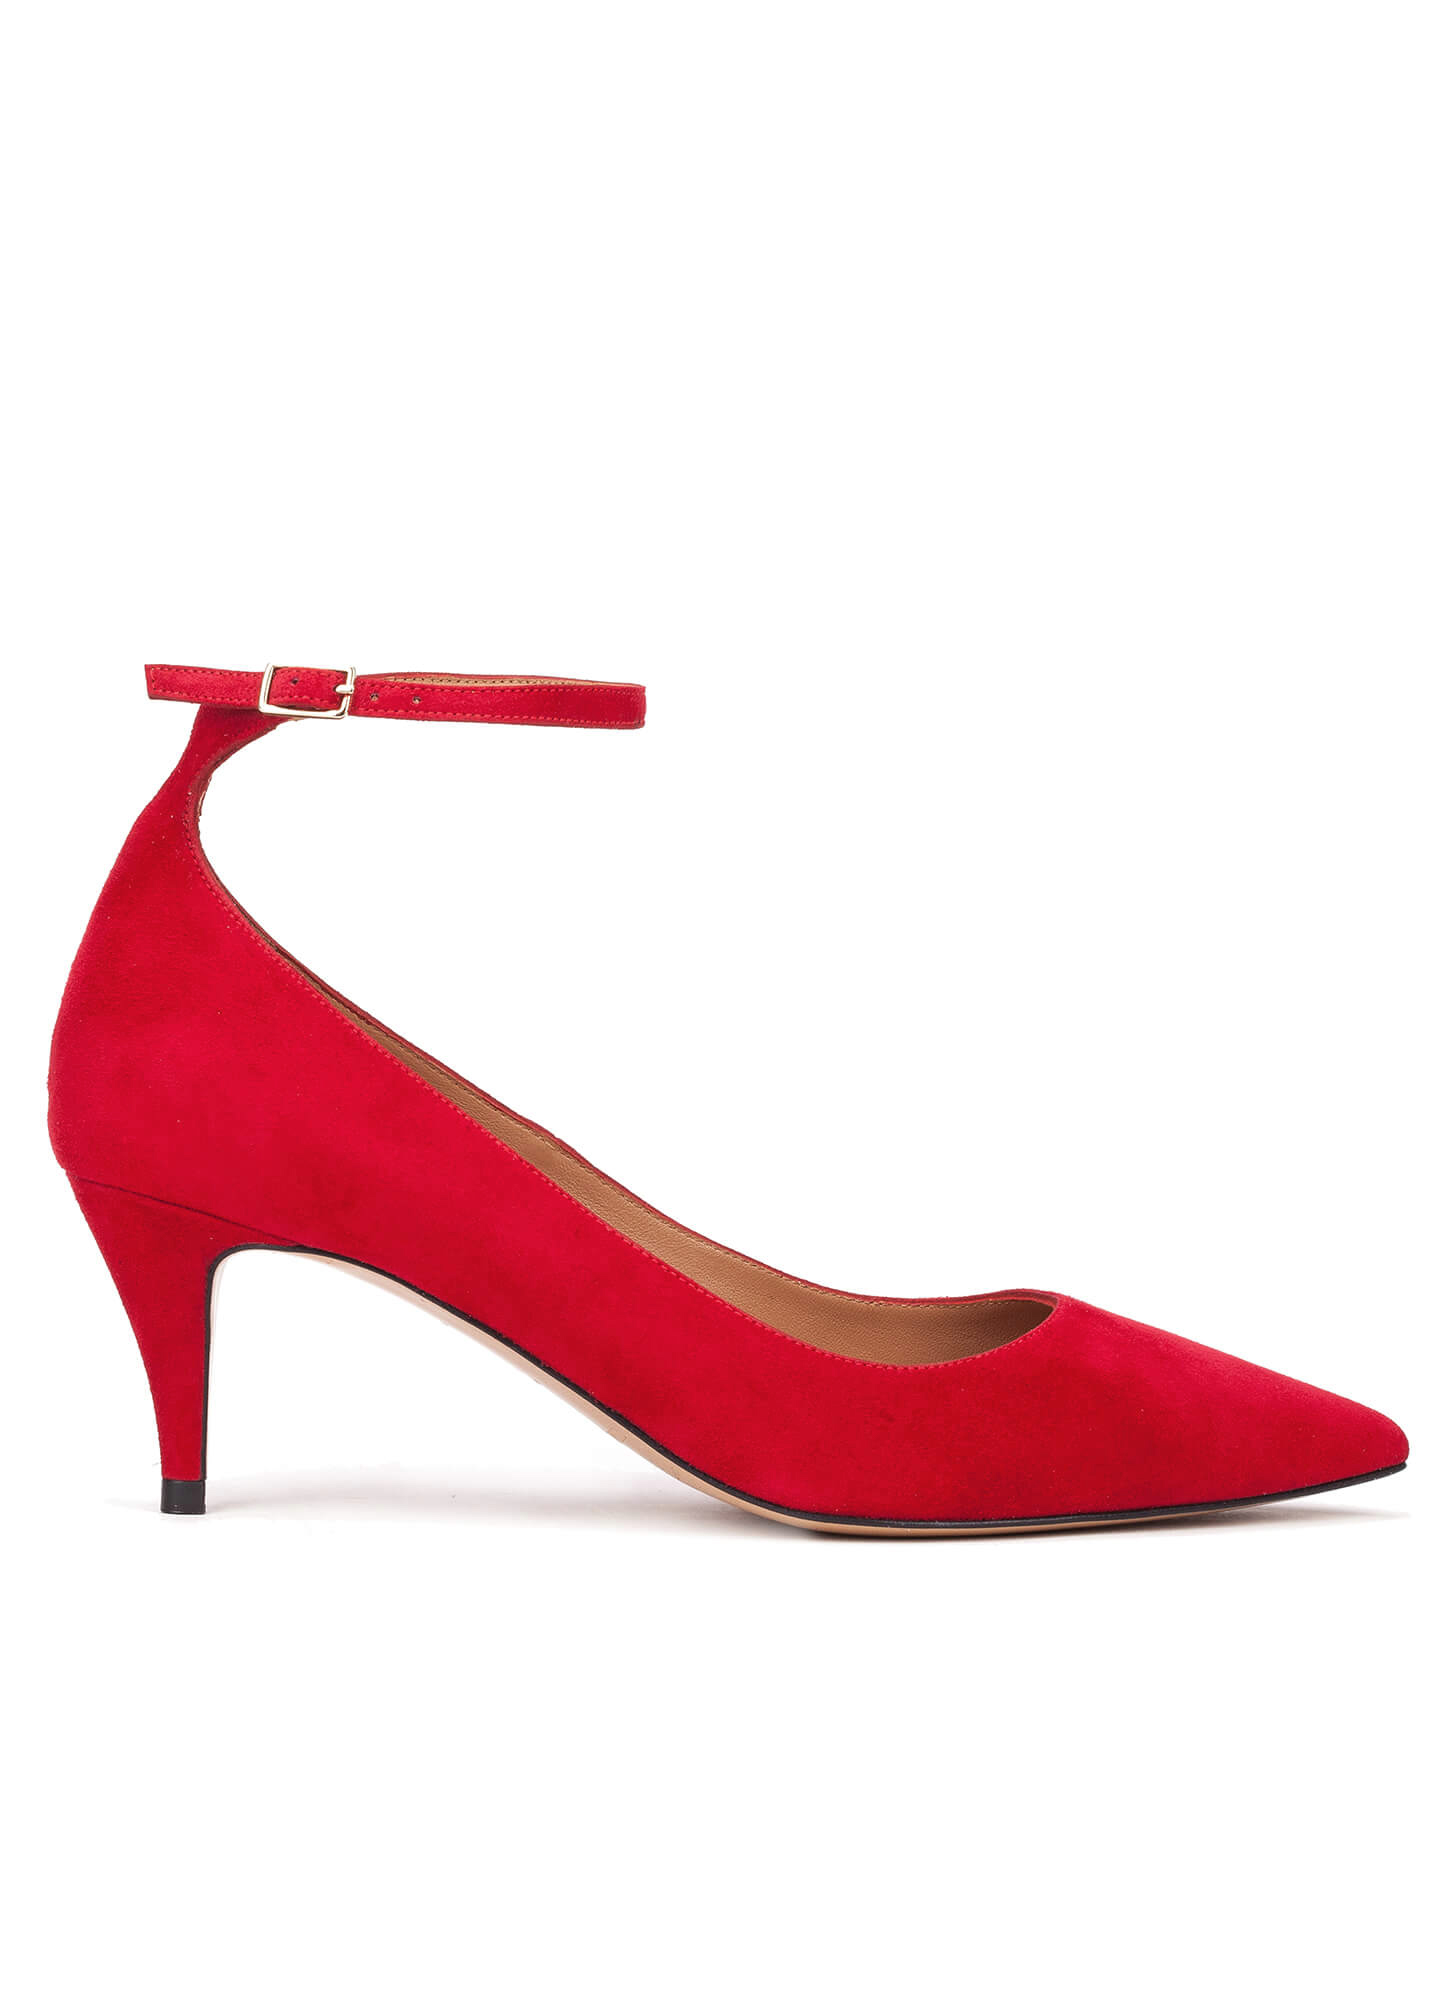 Red ankle strap mid heel pumps - online shoe store Pura Lopez . PURA LOPEZ